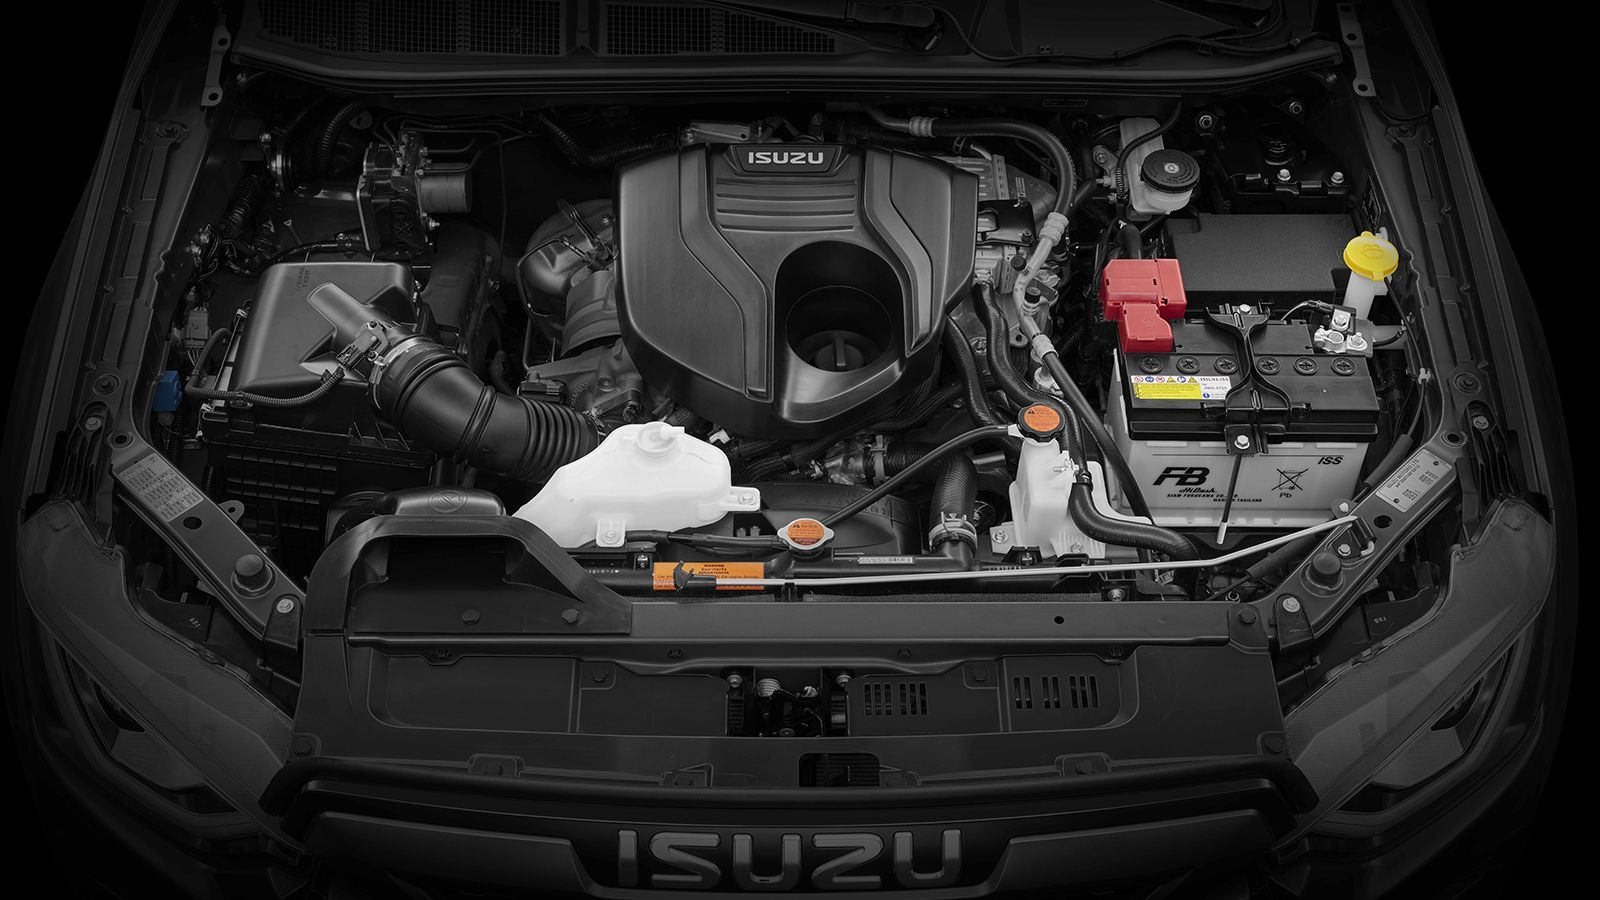 Ο αποδοτικός και αθόρυβος πετρελαιοκινητήρας των 1,9 λτ. της Isuzu φέρει πολλαπλές δομικές αναβαθμίσεις και ηλεκτρονικά ελεγχόμενο turbo.